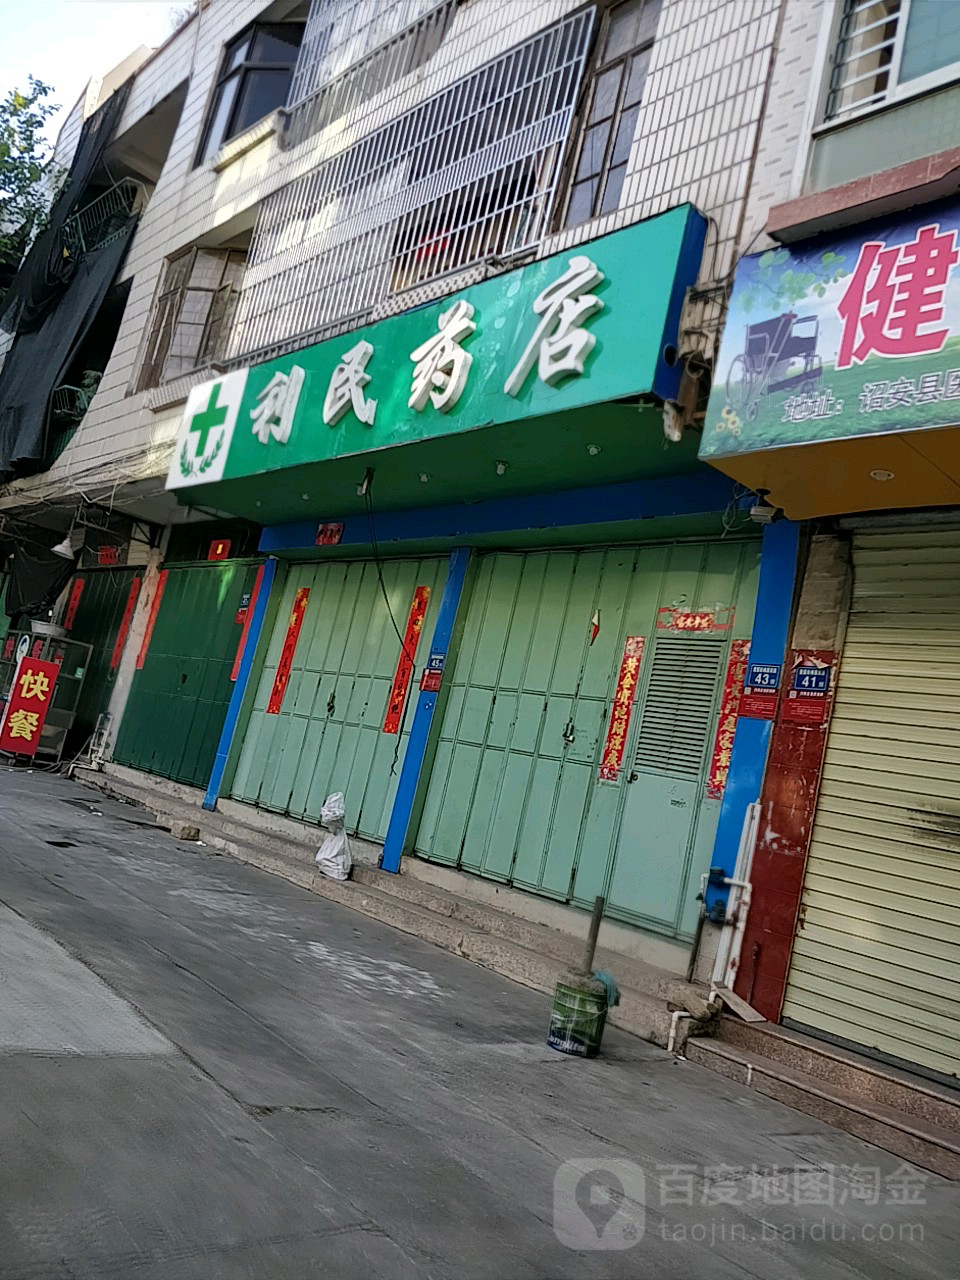 利民药店(北斗卫生所西北)